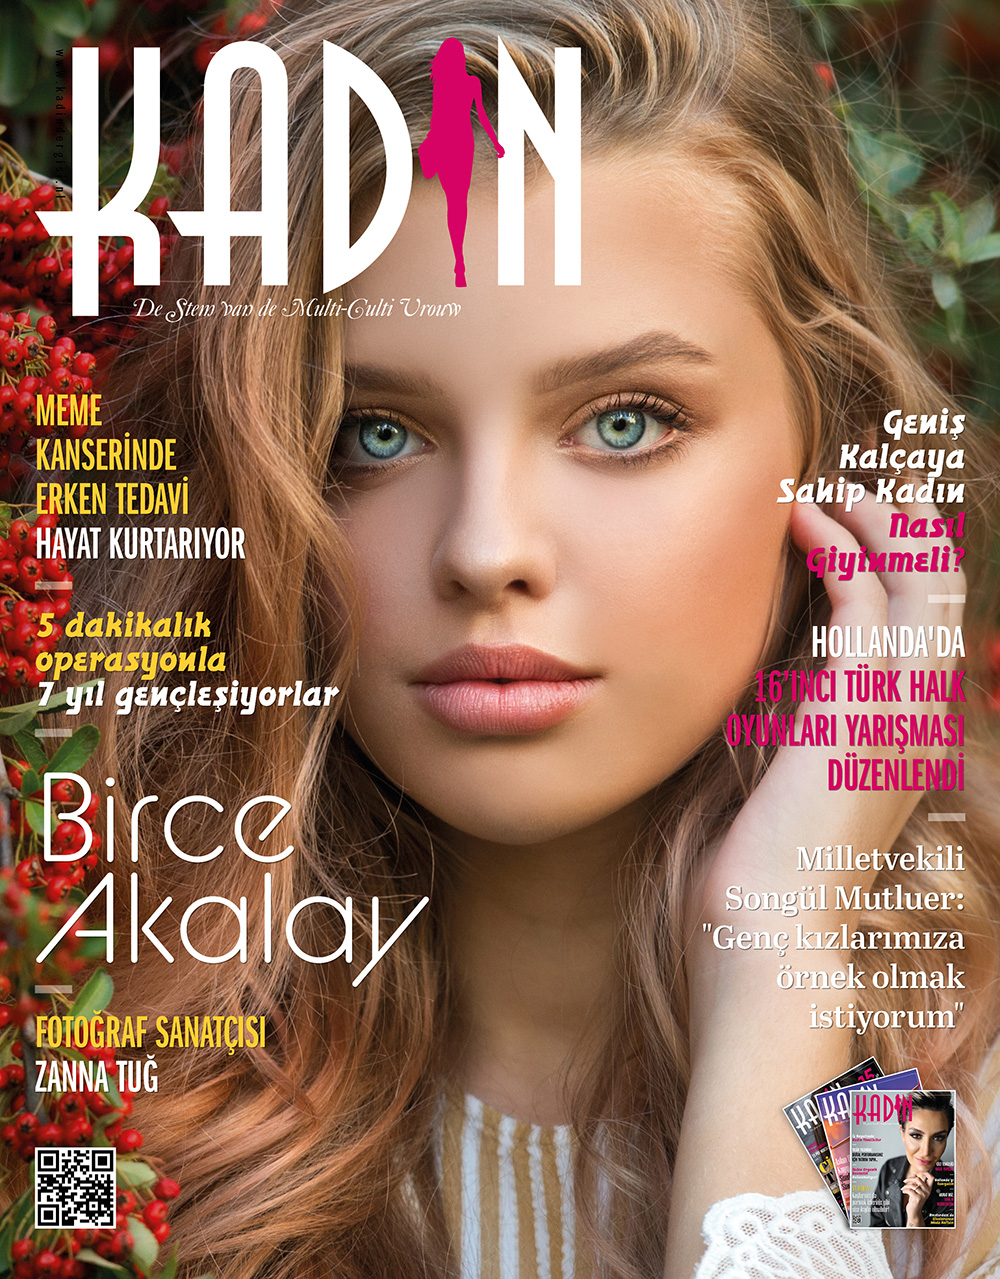 Avrupa’ın ilk ve tek en uzun soluklu dergisi KADIN 14 yaşında.